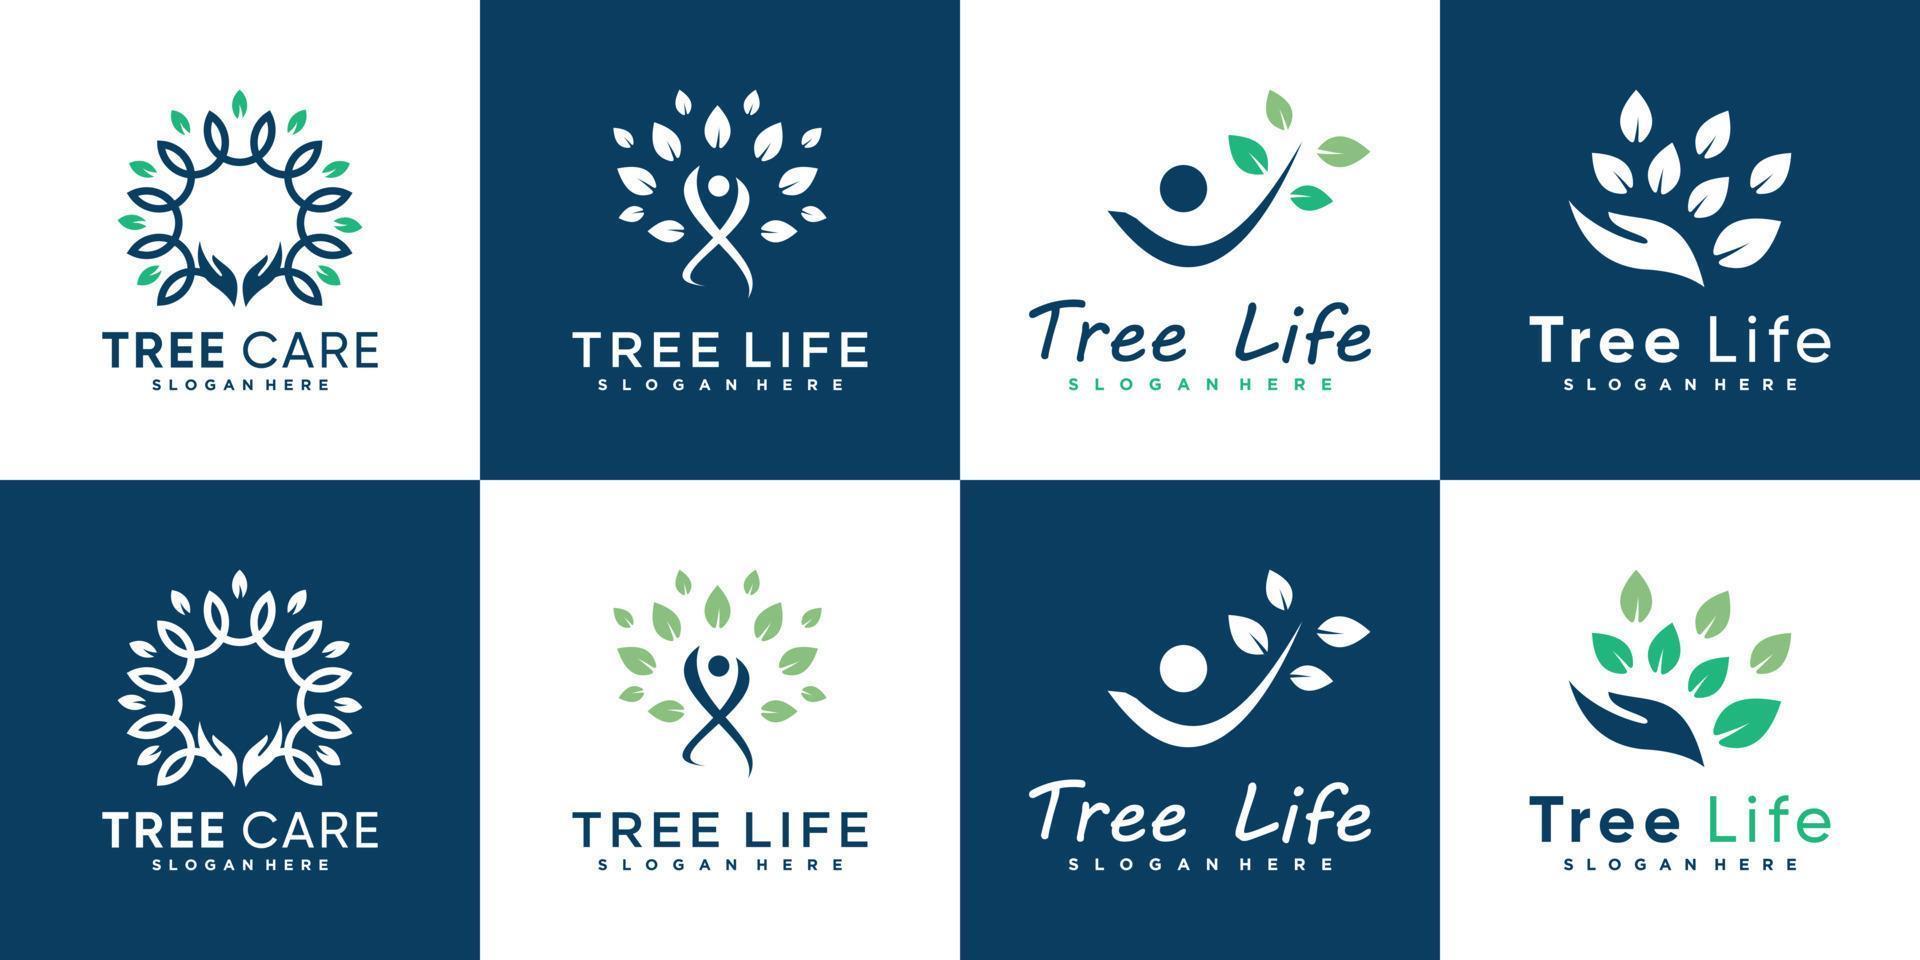 collezione di logo della vita dell'albero con vettore premium in stile umano moderno